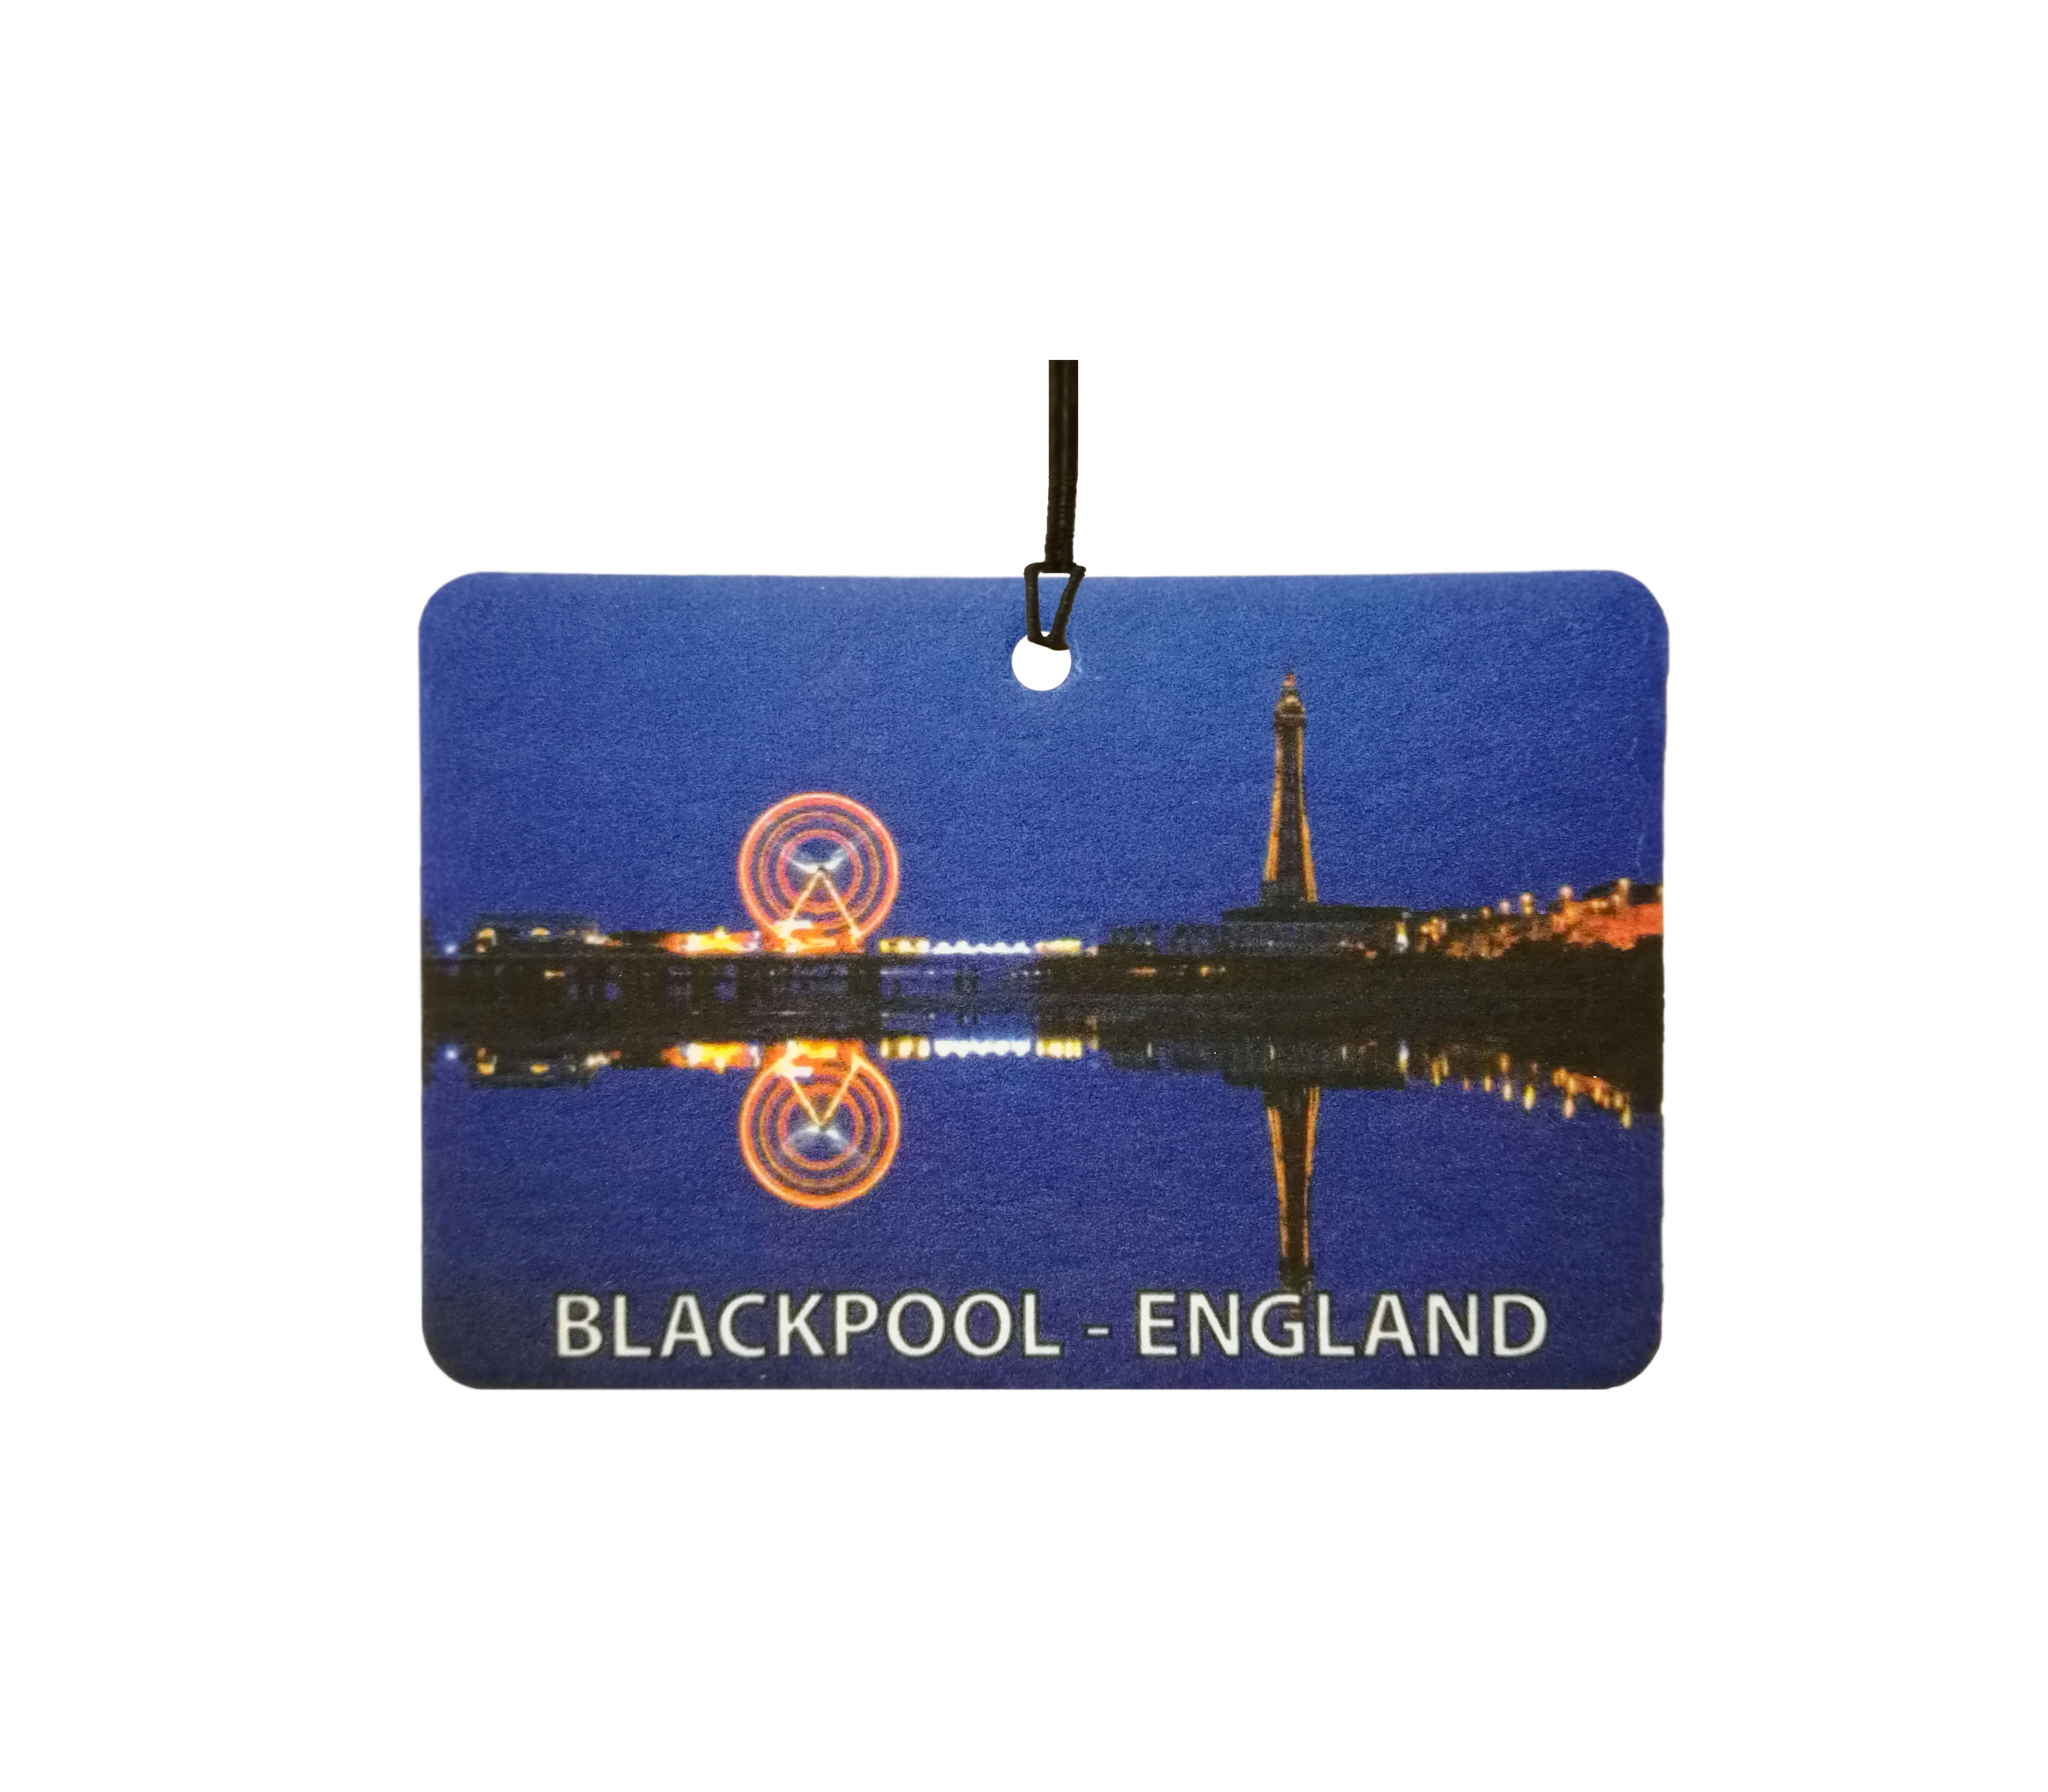 Blackpool - England